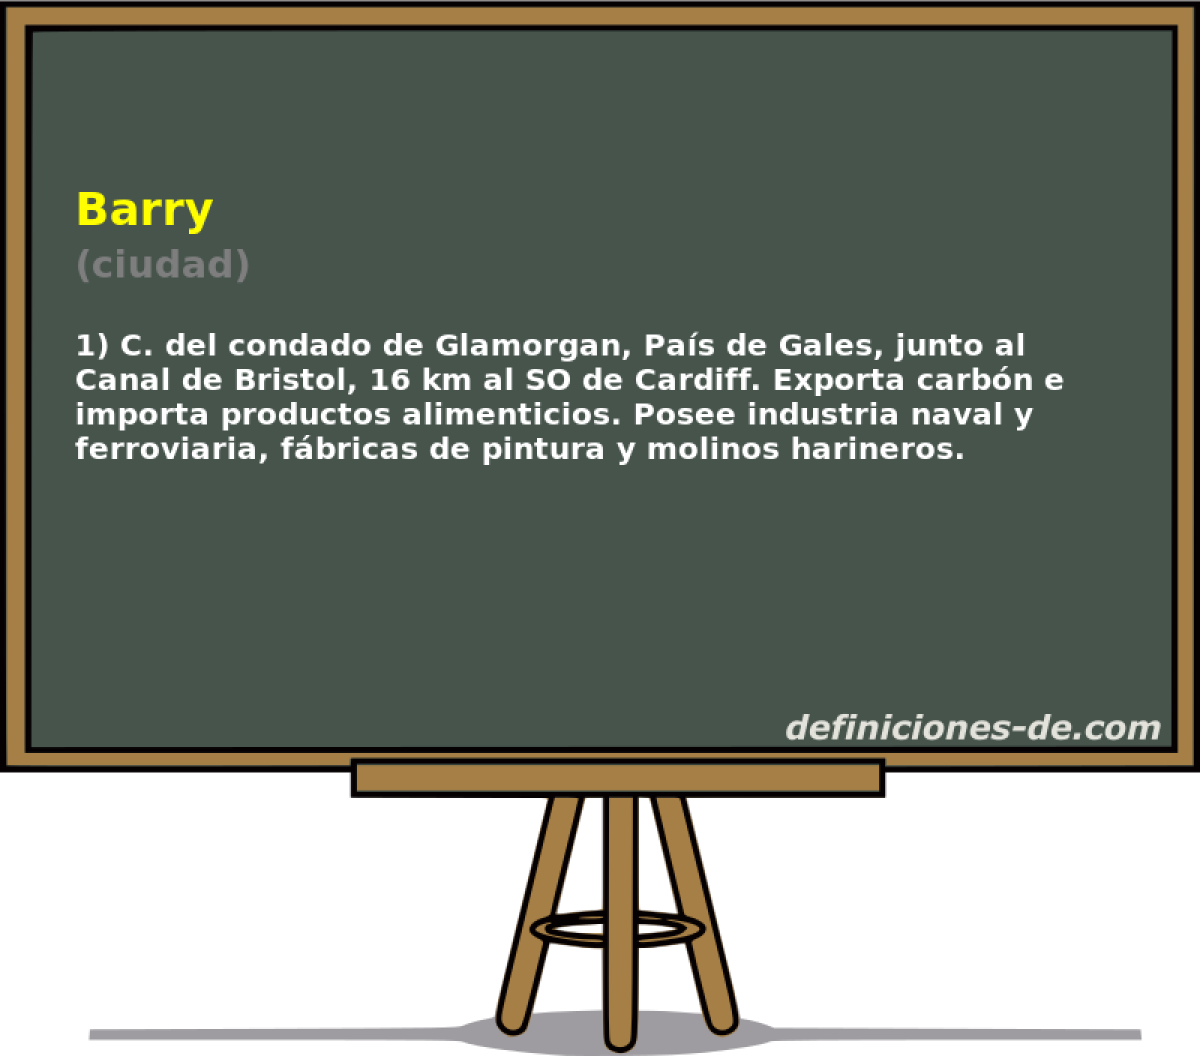 Barry (ciudad)